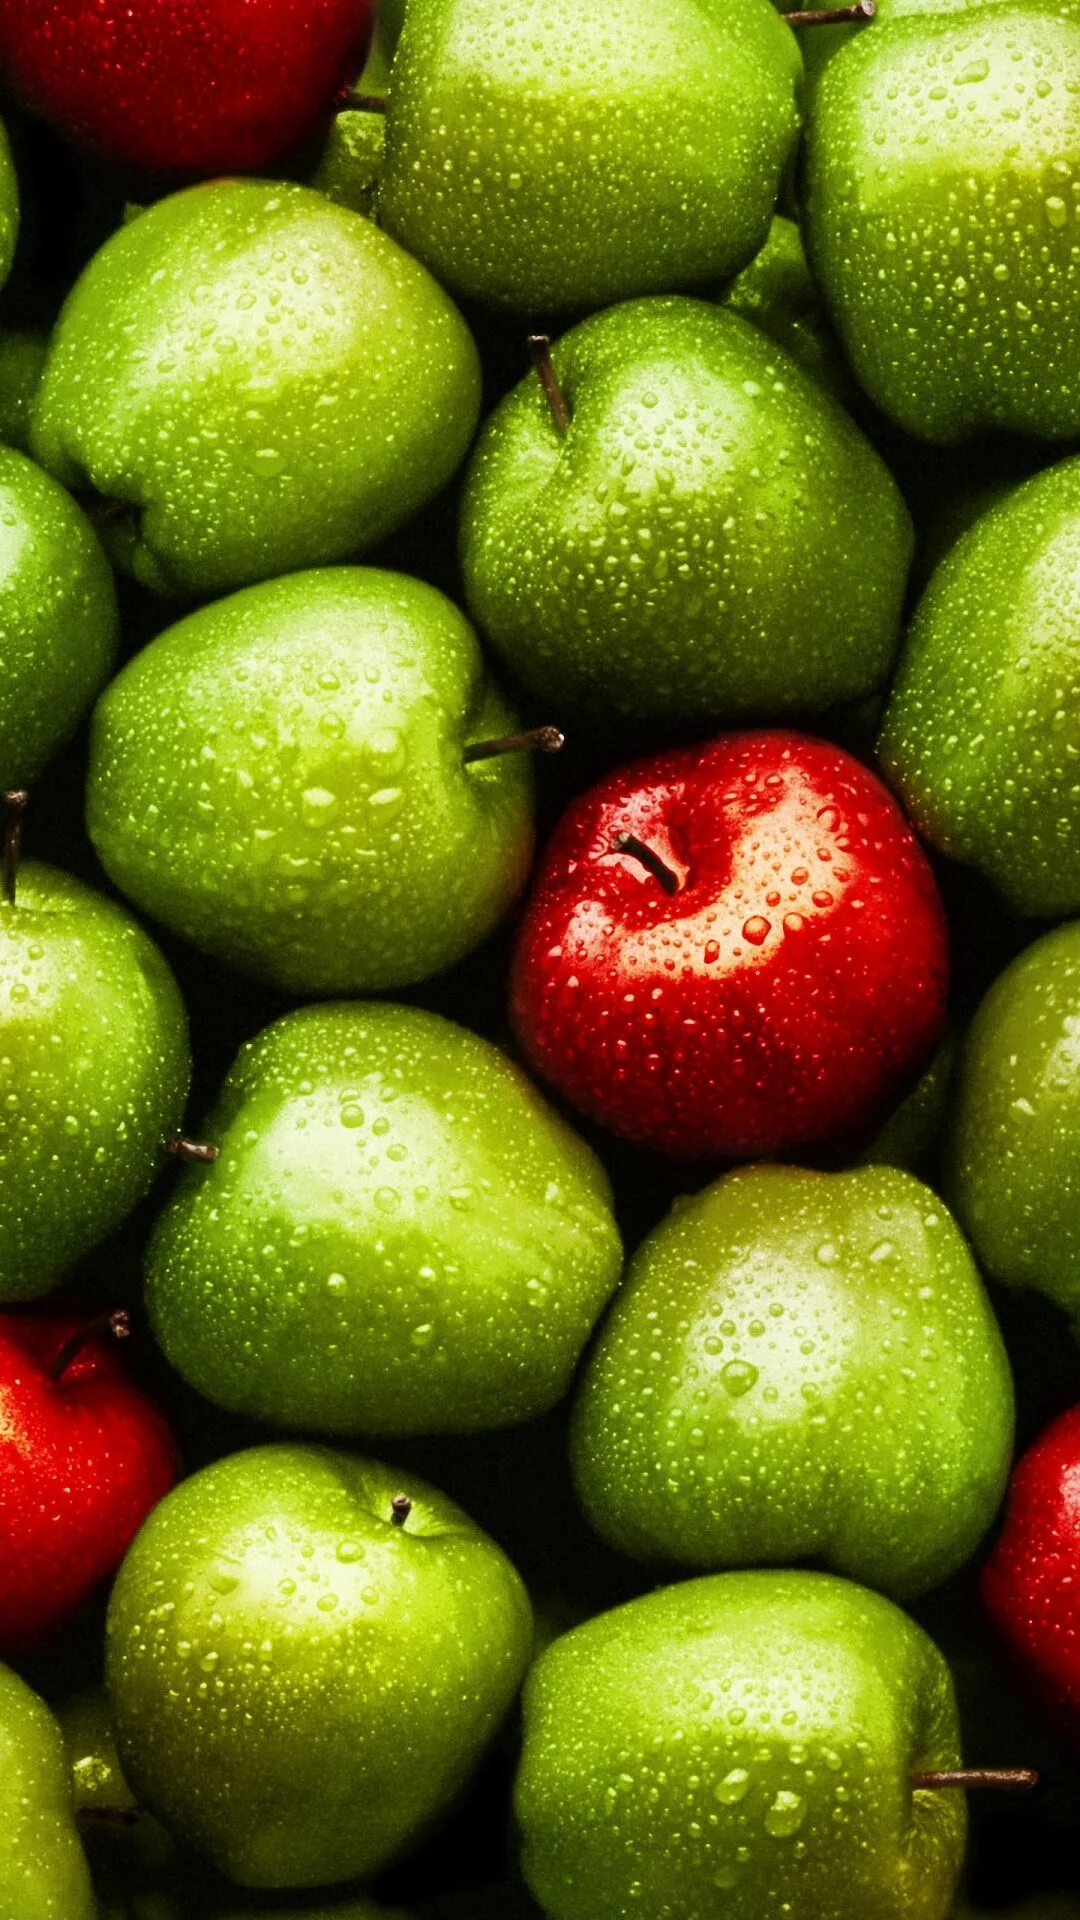 Заставка на телефон фрукты. Сочные фрукты. Сочные овощи и фрукты. Зеленый фрукт. Фрукты яблоко красное и зеленое.